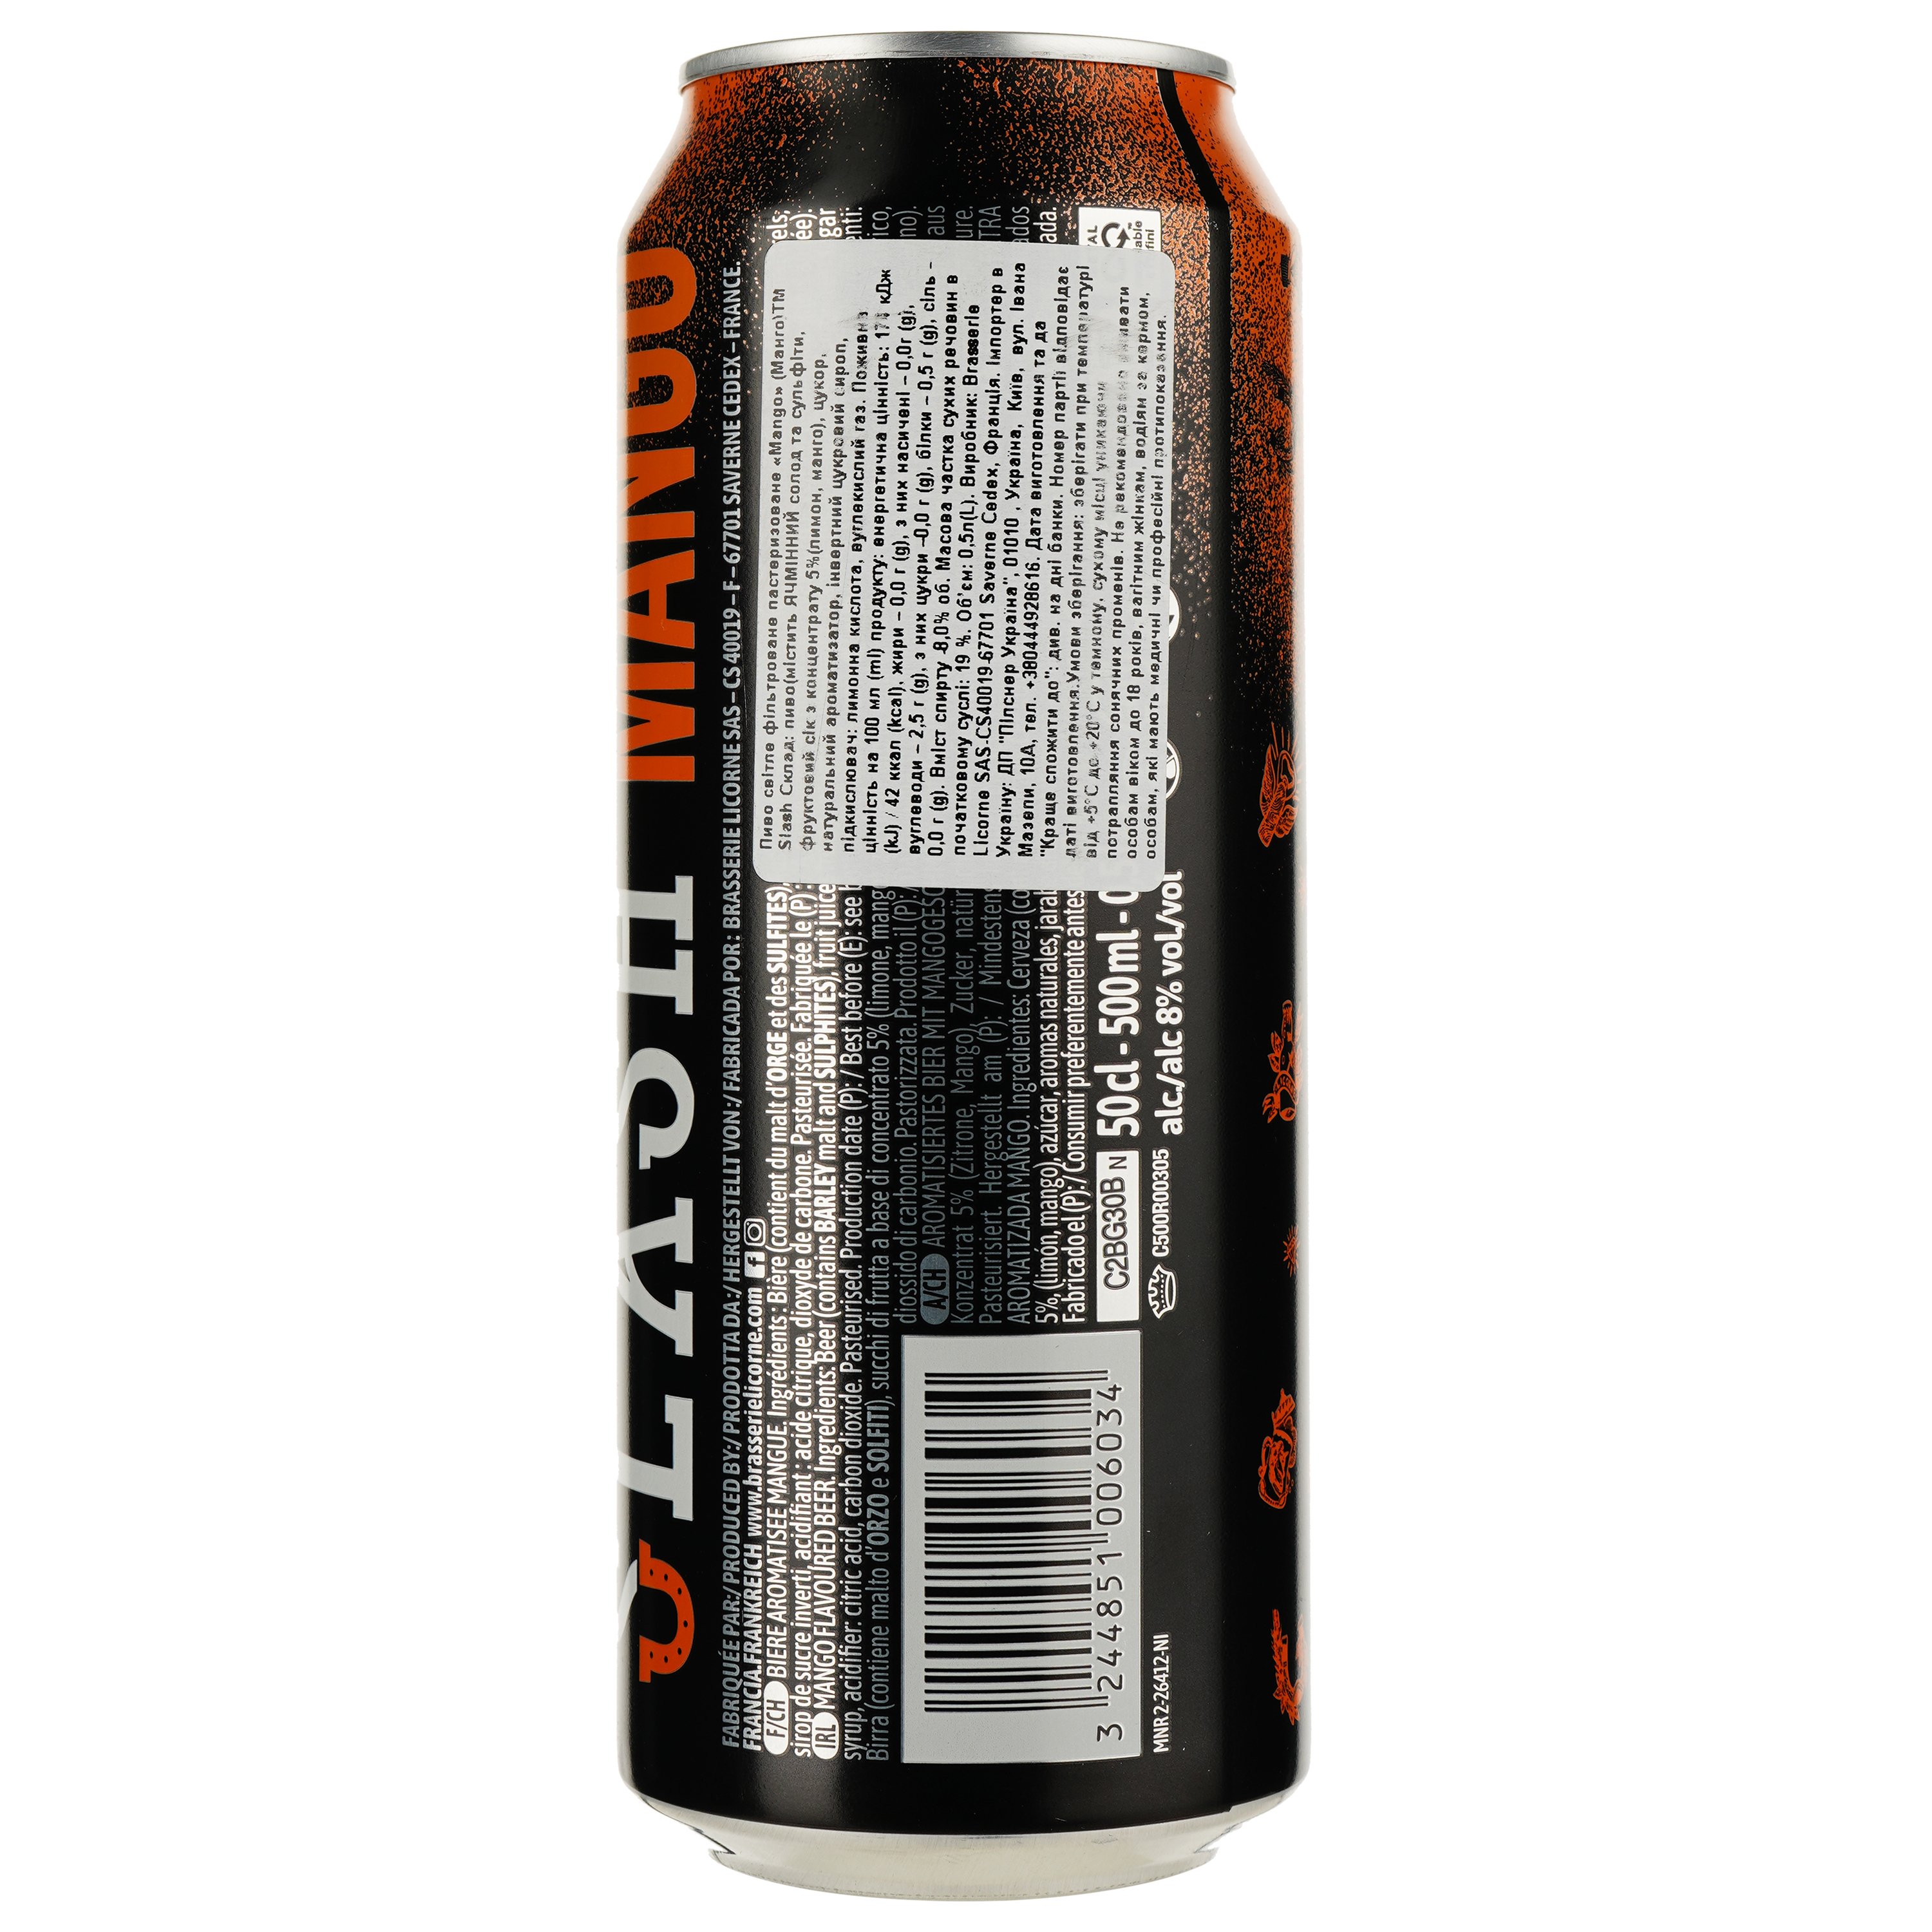 Пиво Slash Mango світле 8% 0.5 л з/б - фото 2